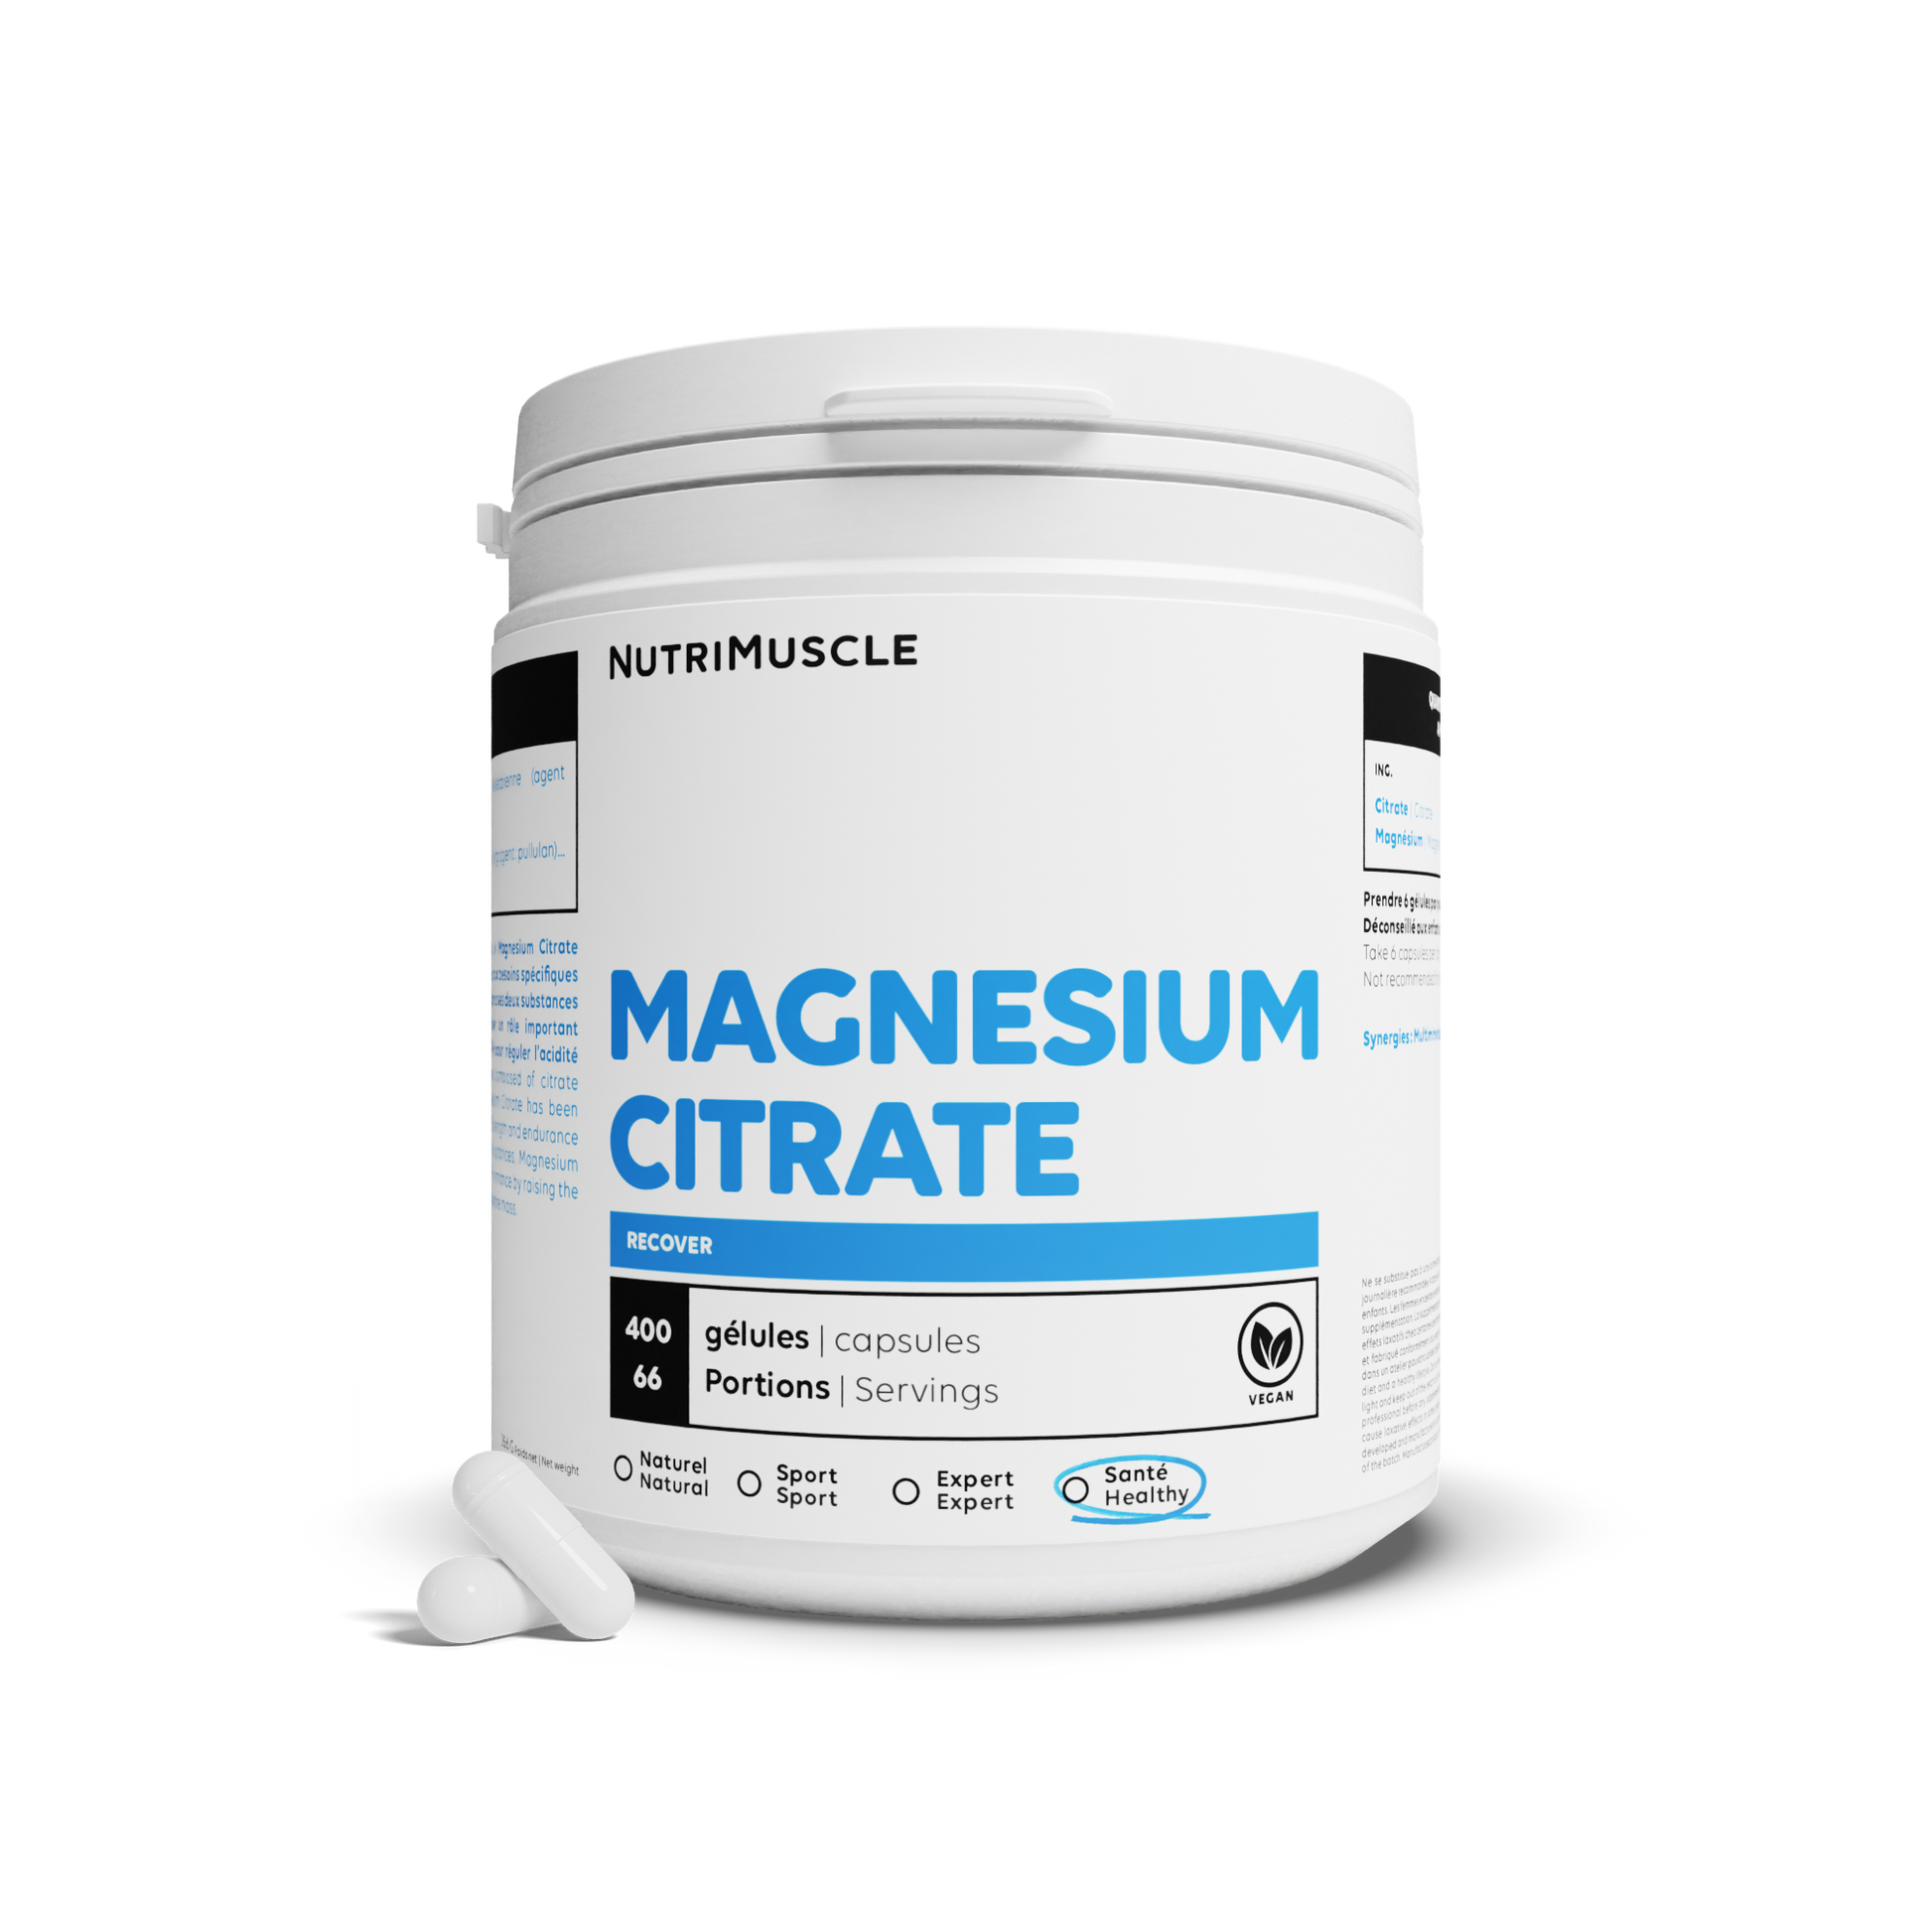 Magnesium Cyules Citrate